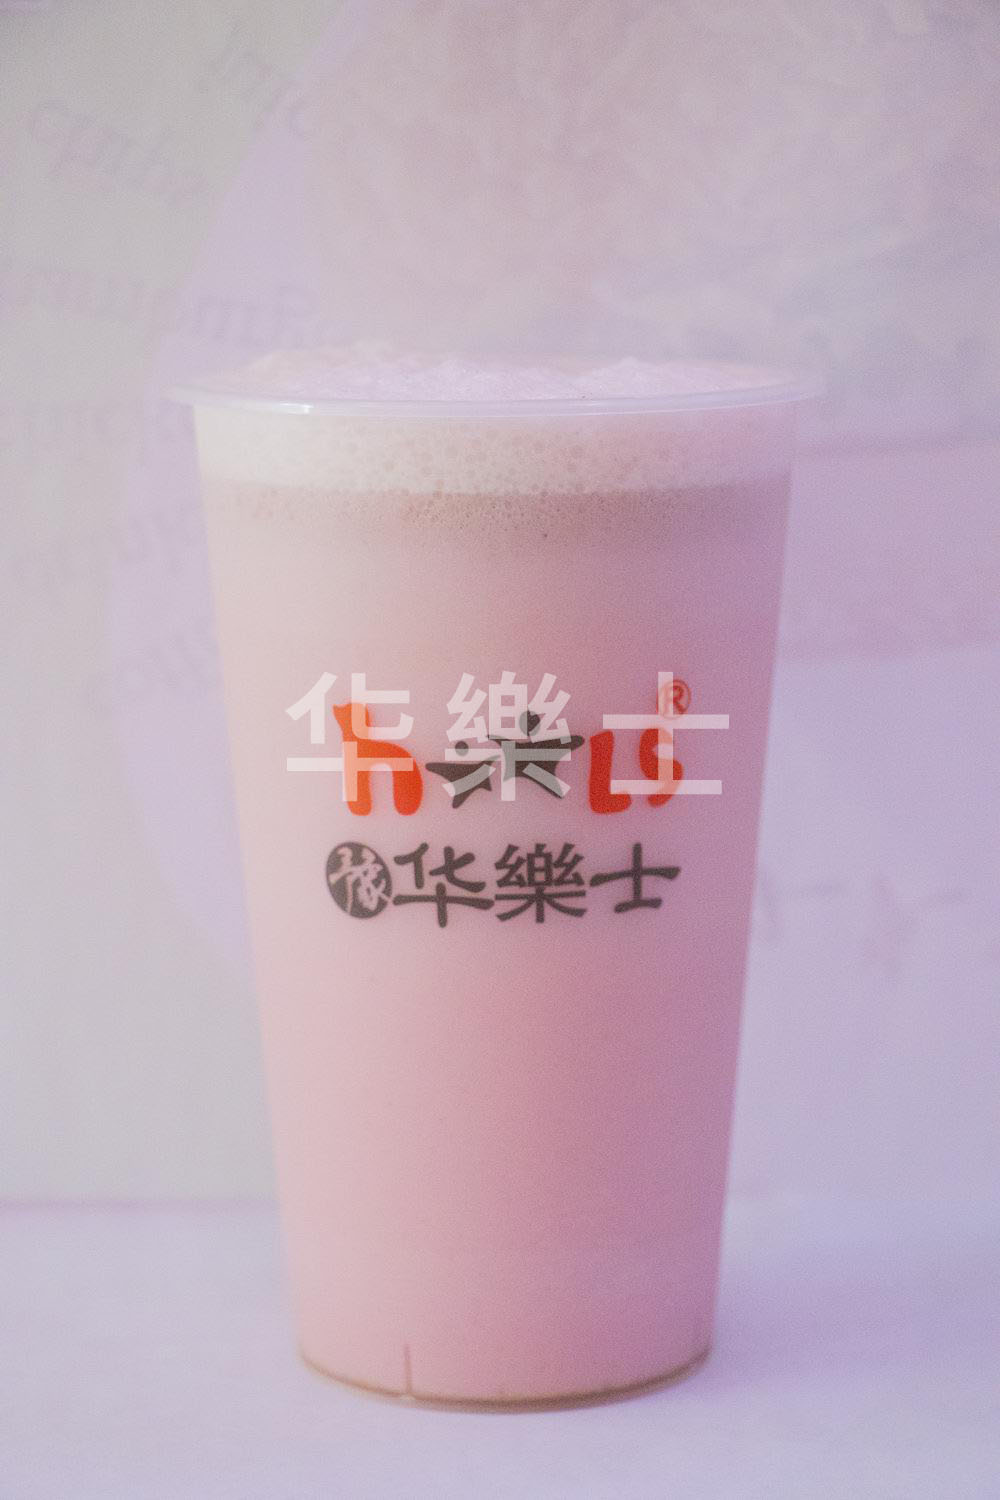 草莓奶茶